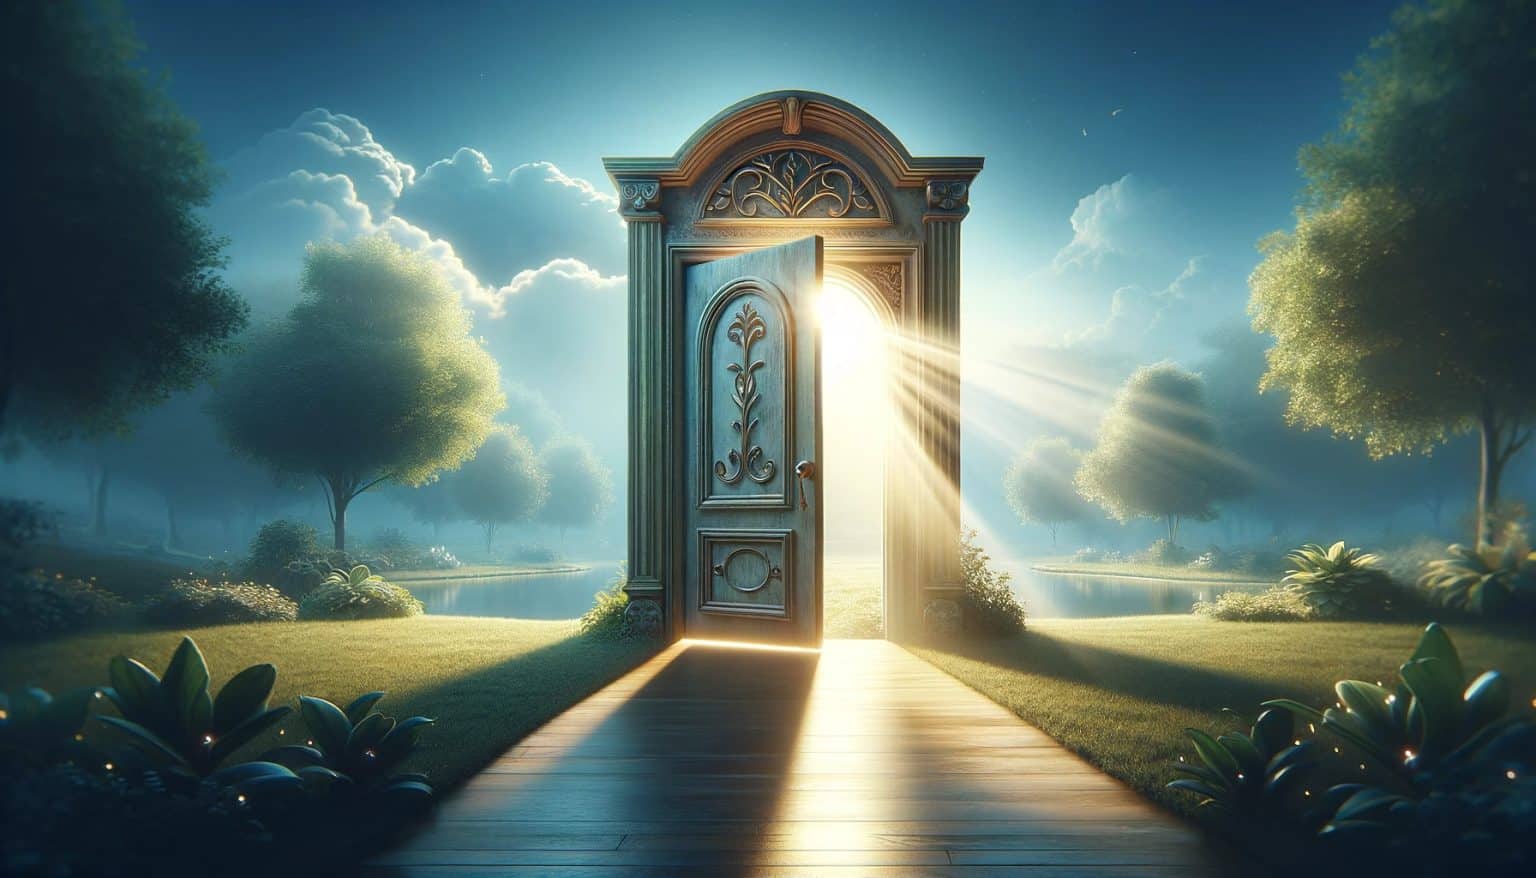 the door to Gods house